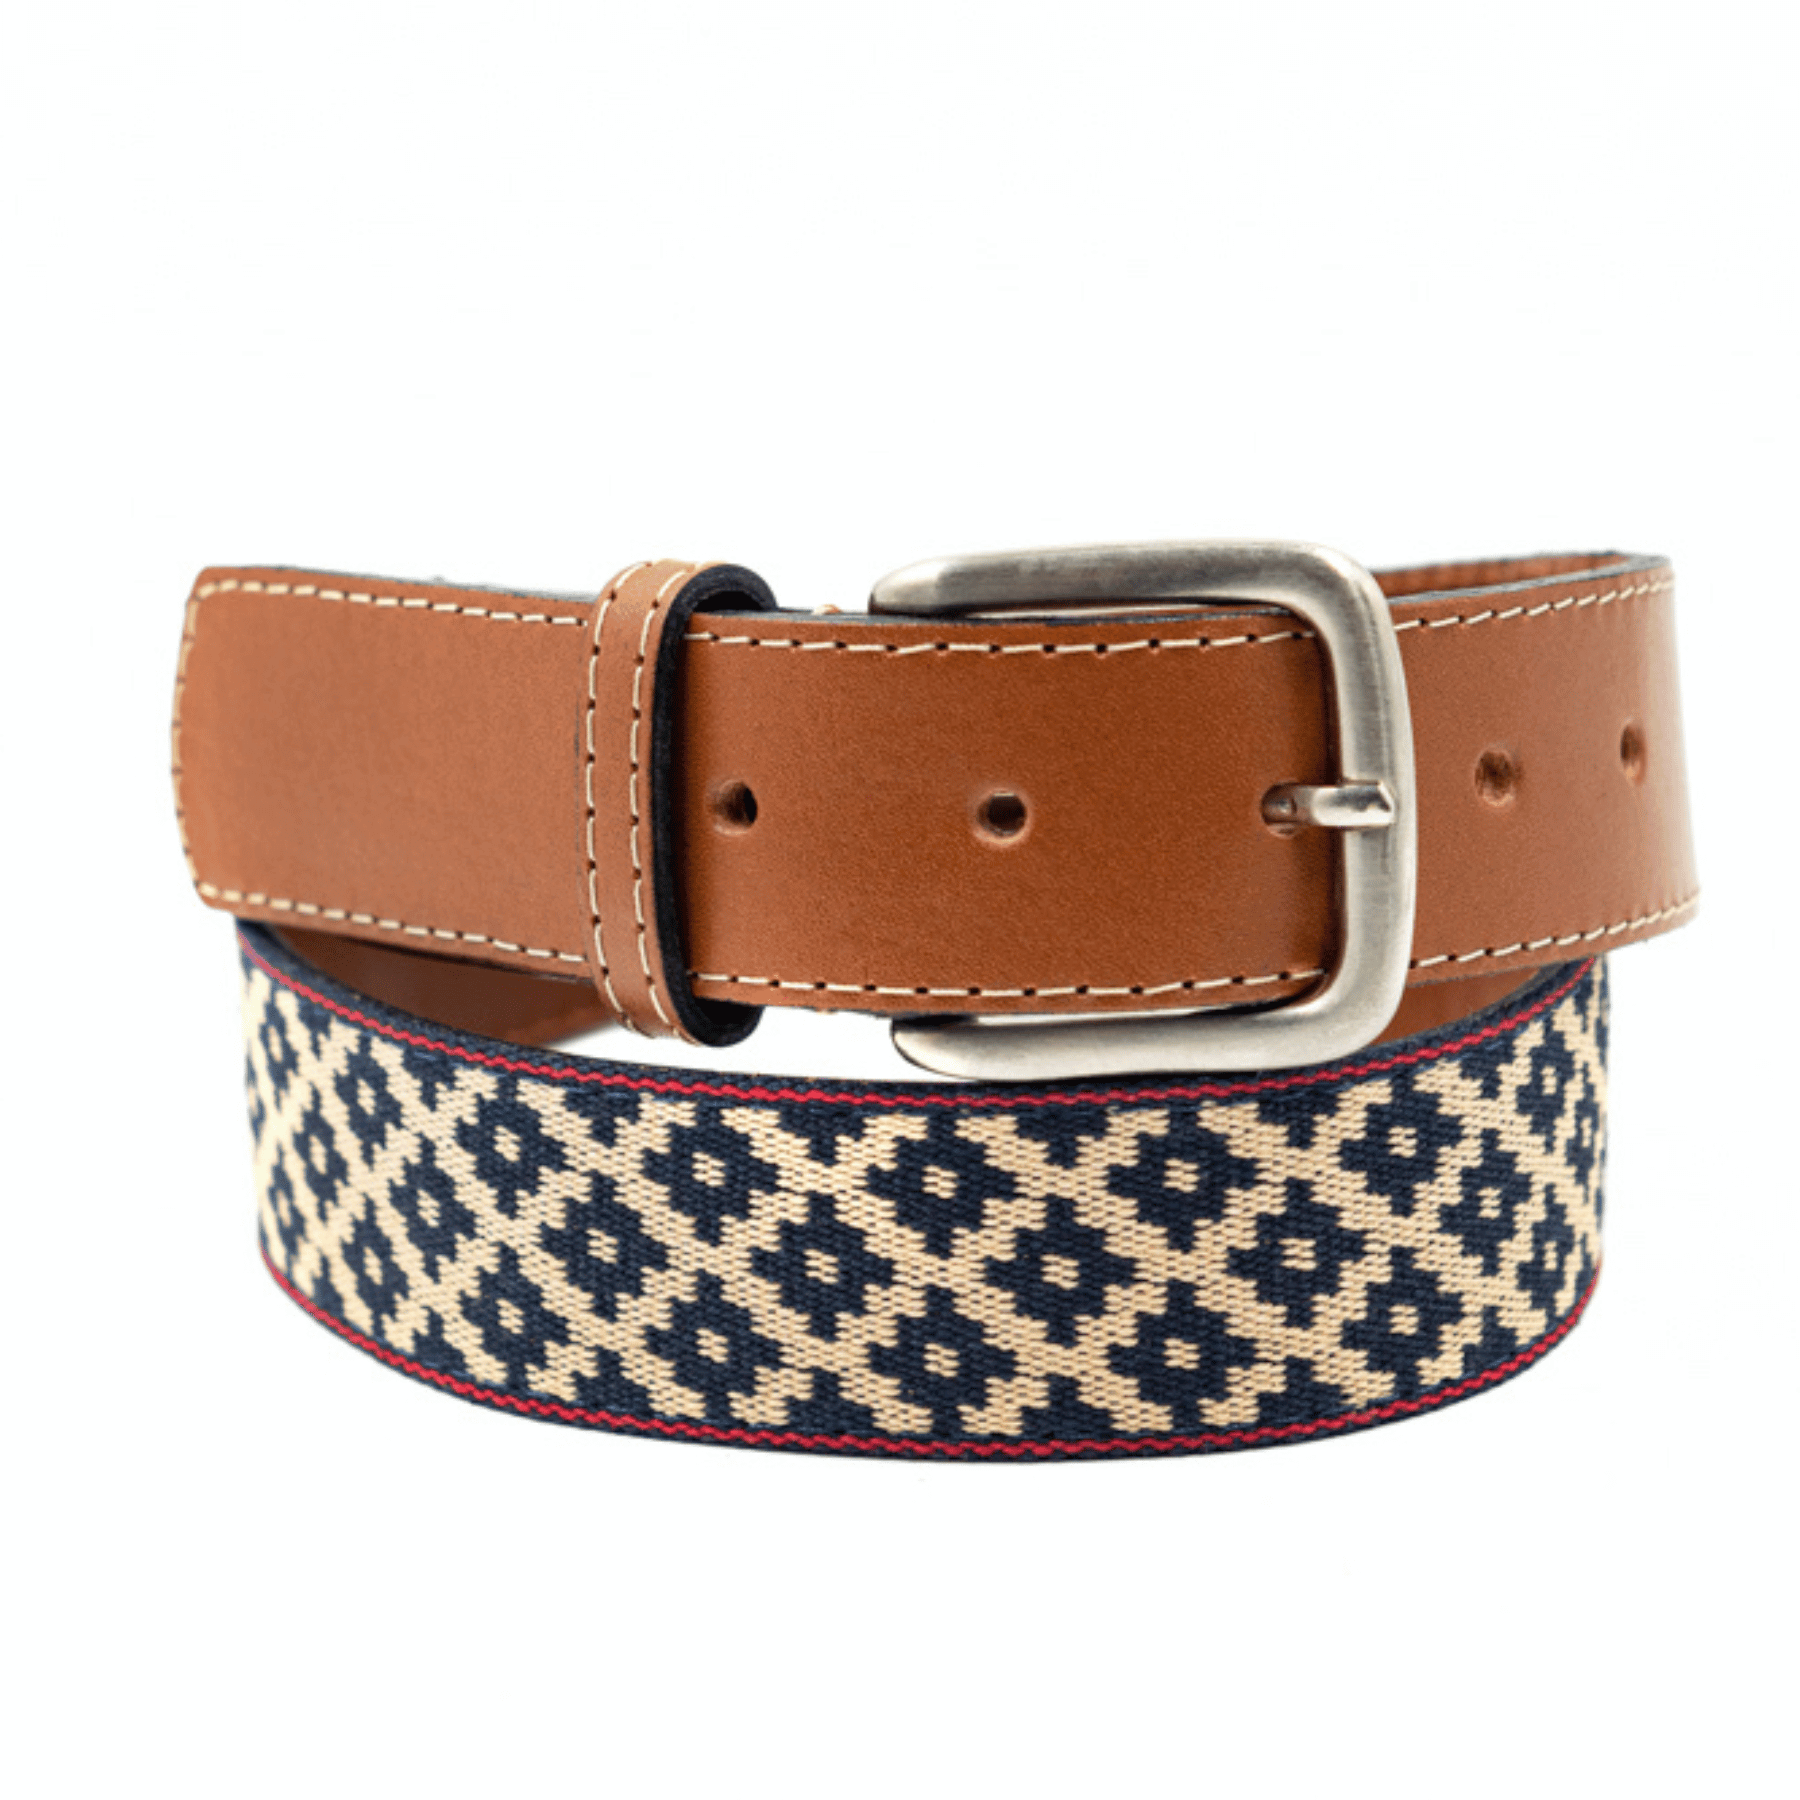 Men's Handmade Western Belt - Cowboy Stitch Medium Brown